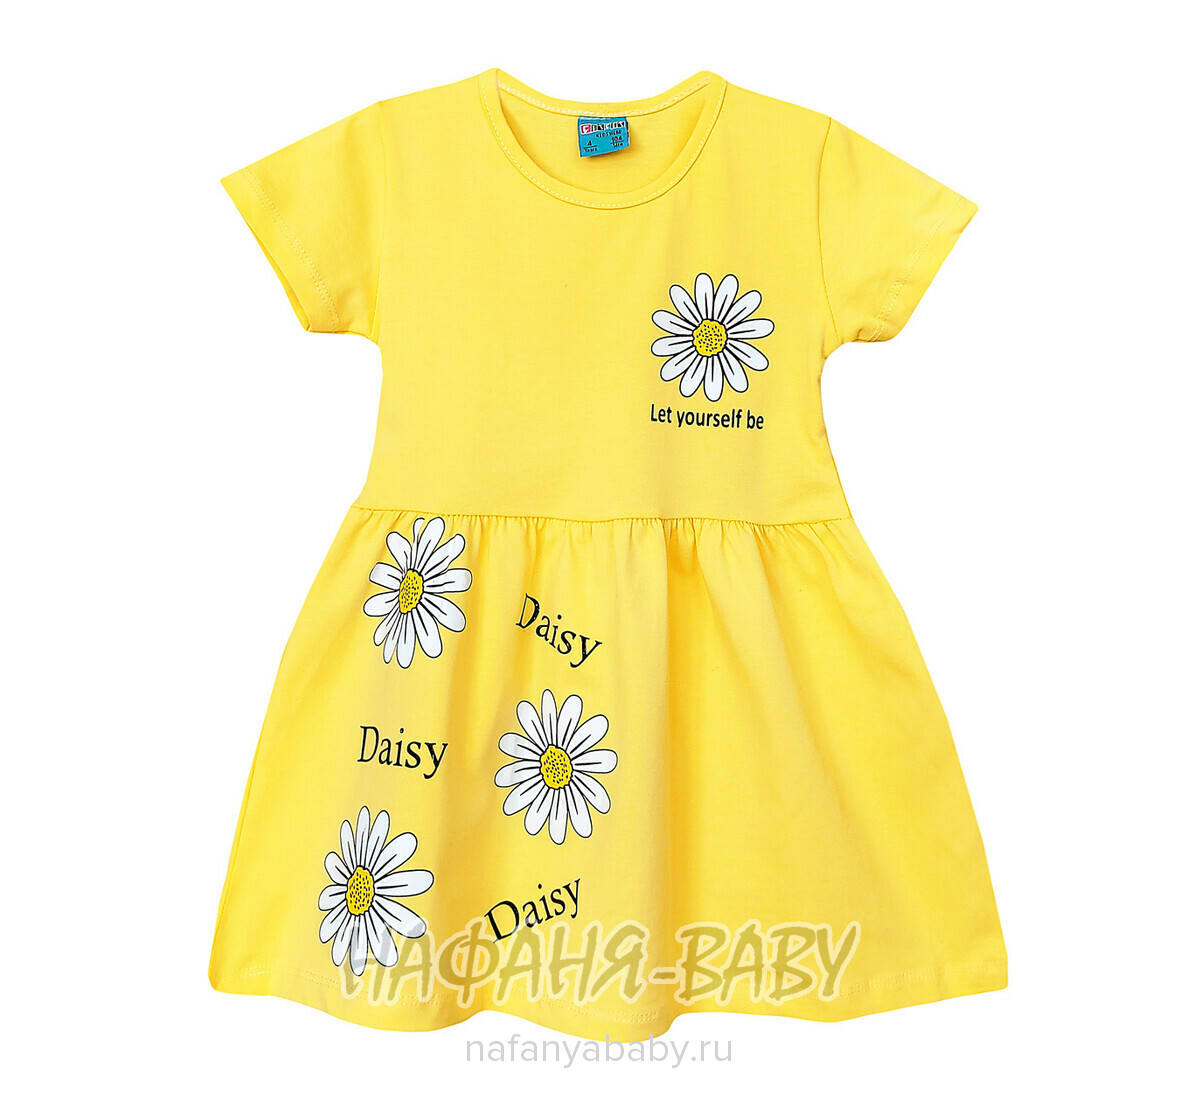 Детское платье Cit Cit арт. 16309, для девочки 3-6 лет, цвет желтый, оптом Турция